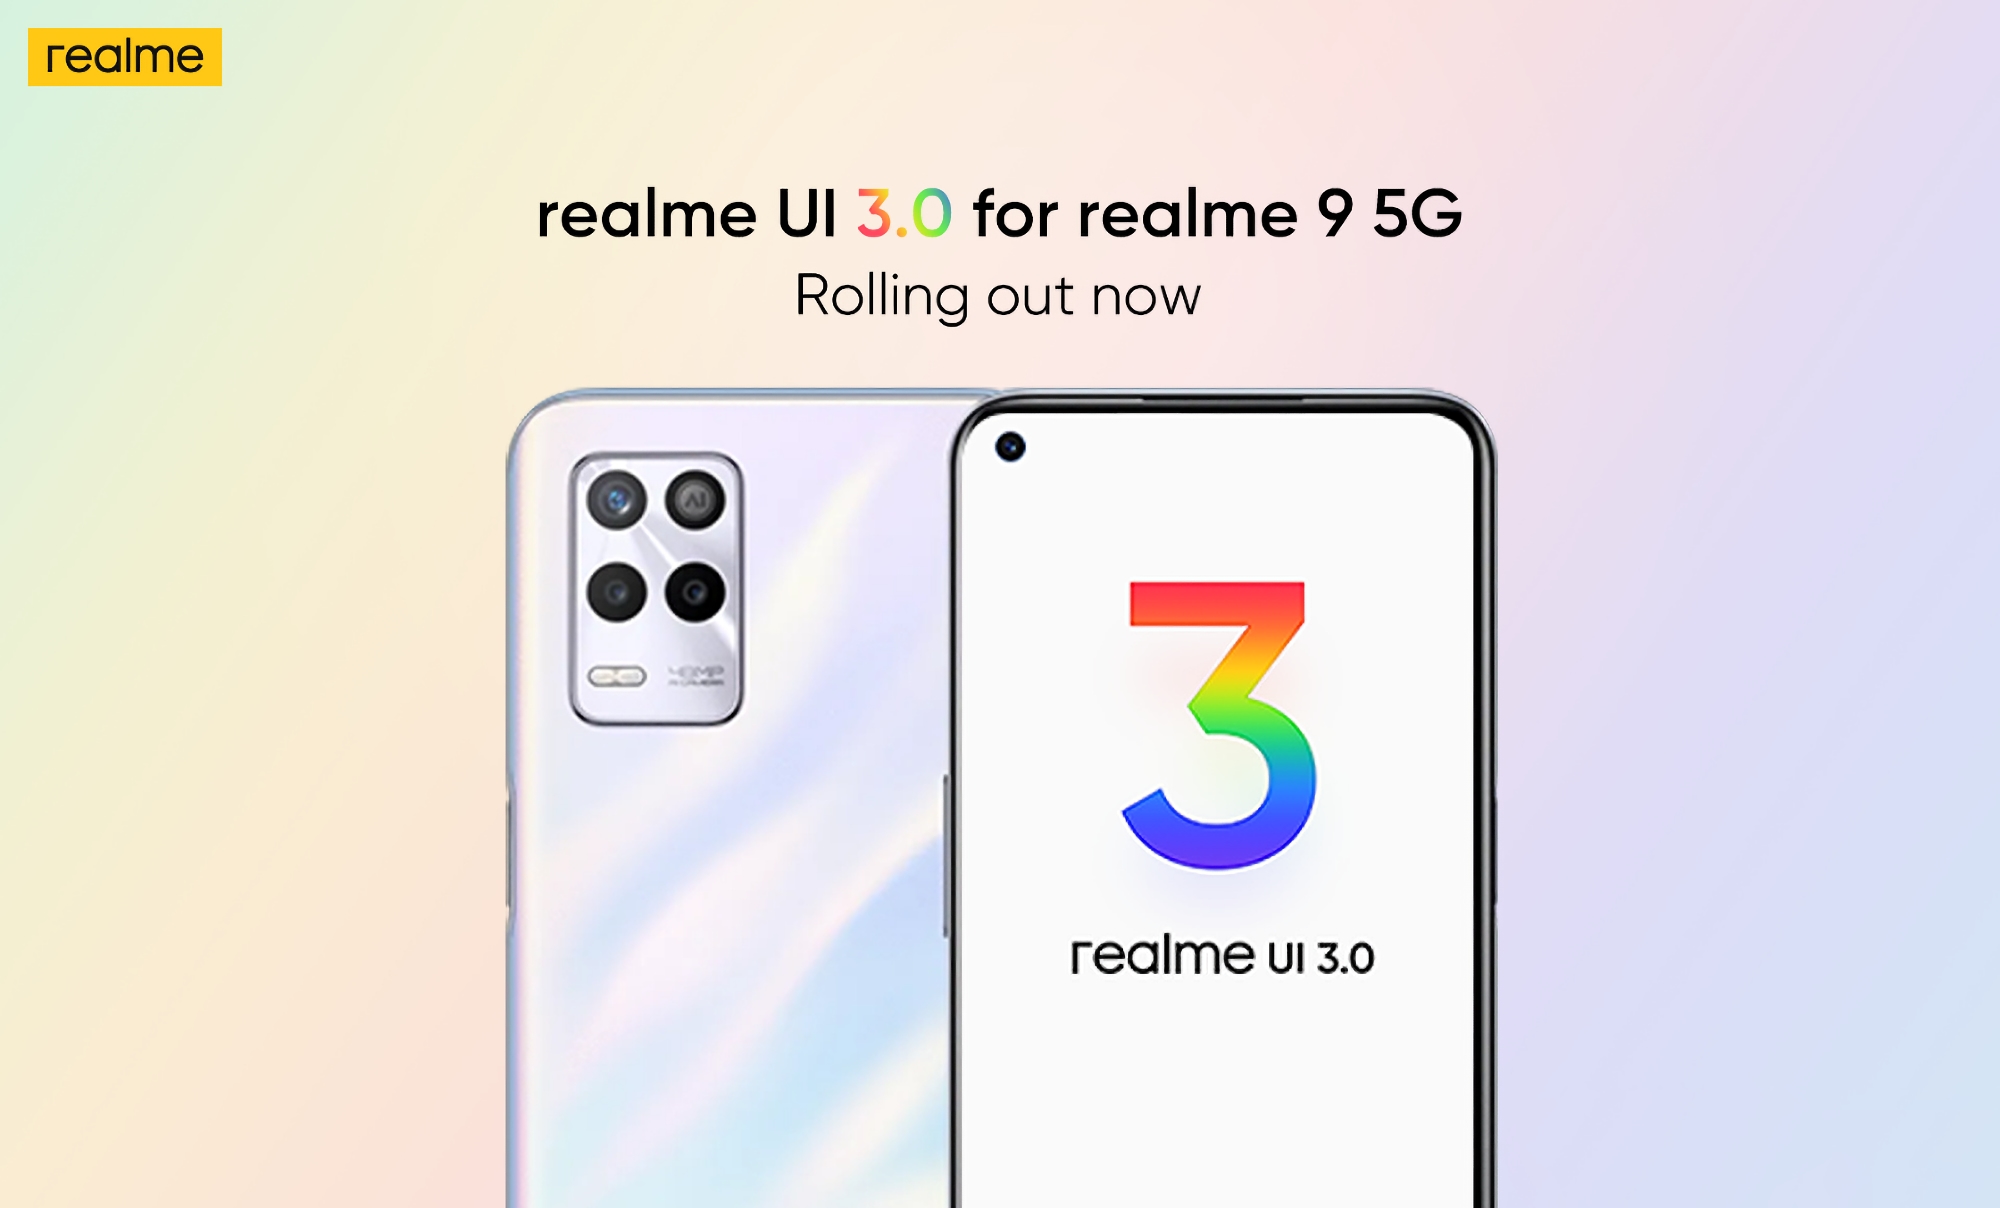 Le Realme 9 5G a reçu une version stable de Realme UI 3.0 basée sur Android 12.